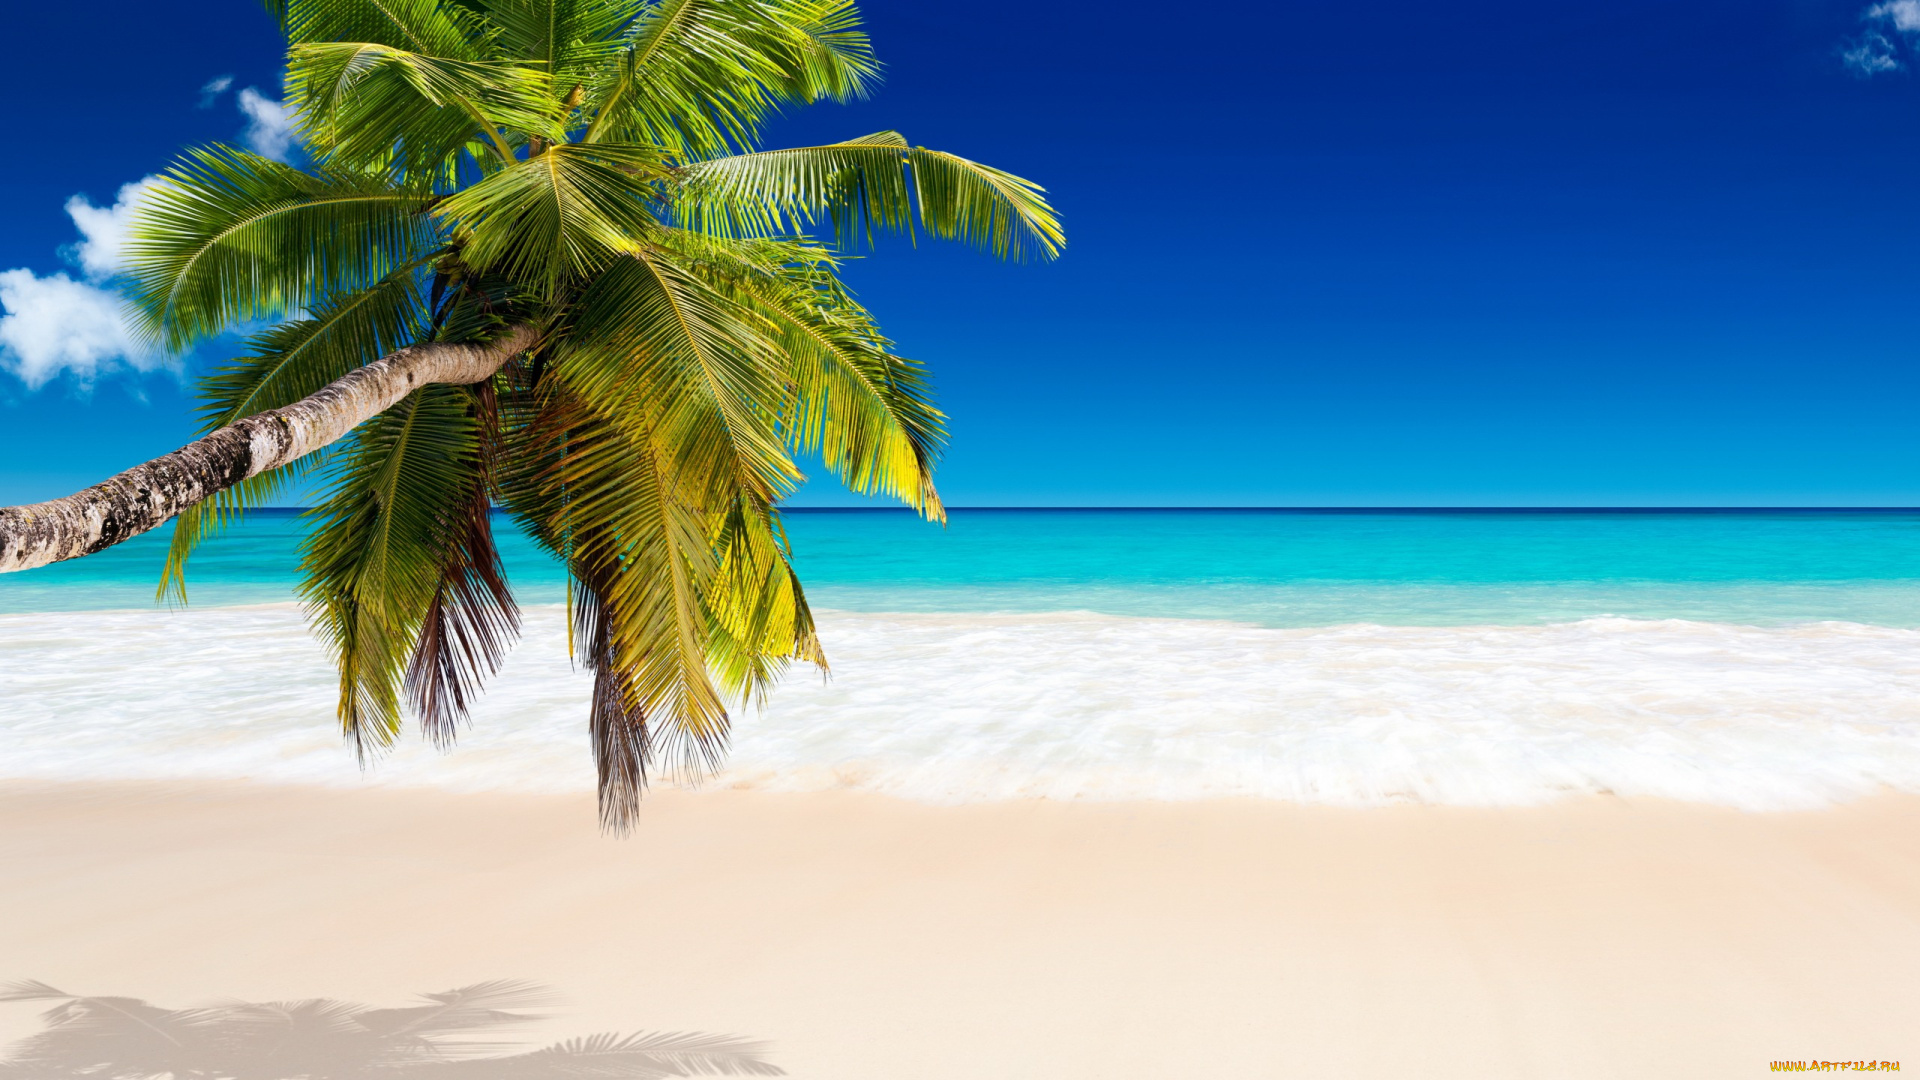 природа, тропики, palms, beach, tropical, paradise, пляж, summer, vacation, sea, пальмы, море, ocean, sunshine, берег, песок